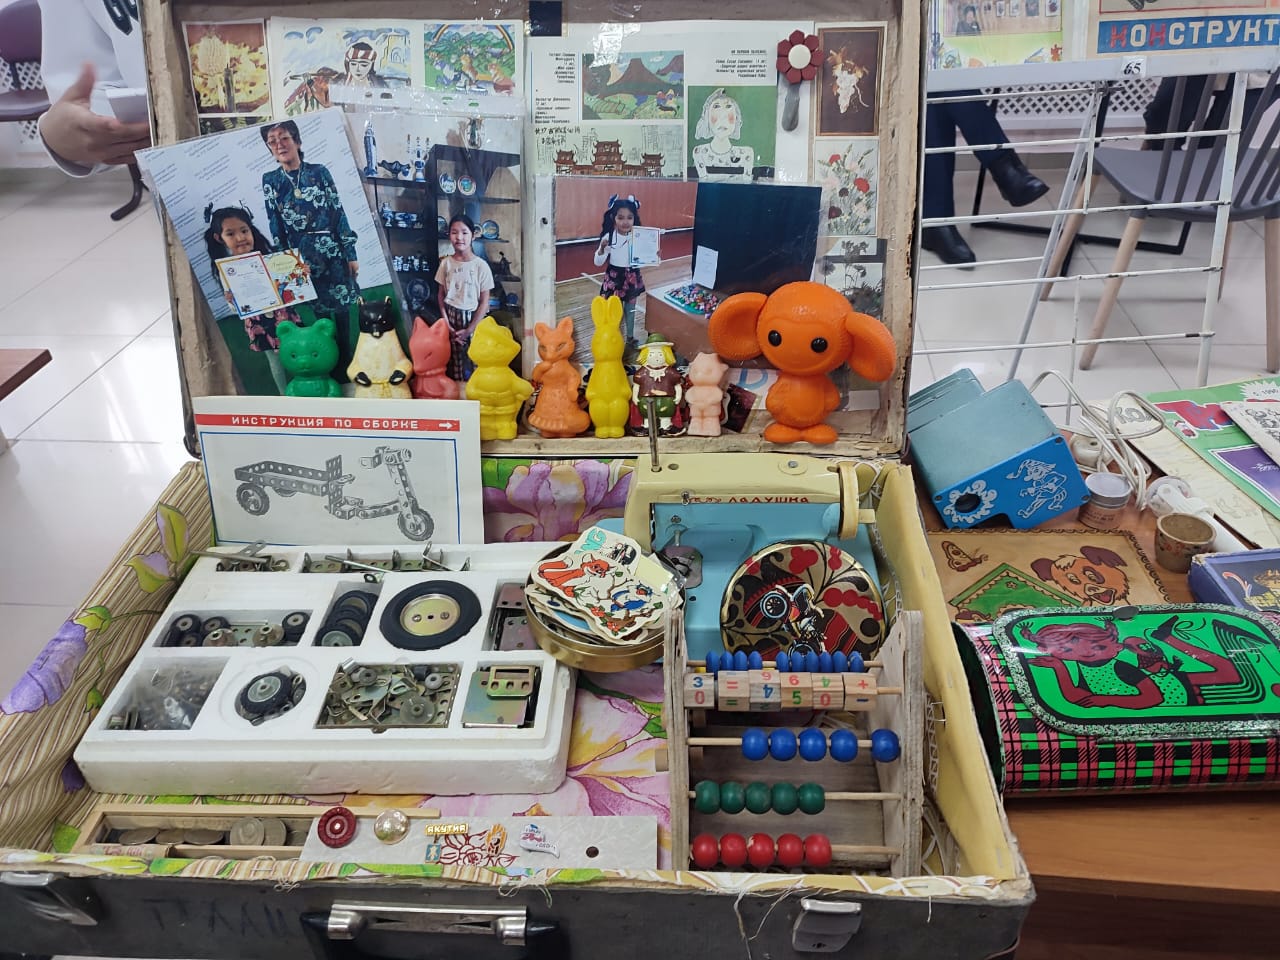 Фото: в Усть-Алданском районе Якутии состоялась выставка-конкурс коллекций детских игрушек